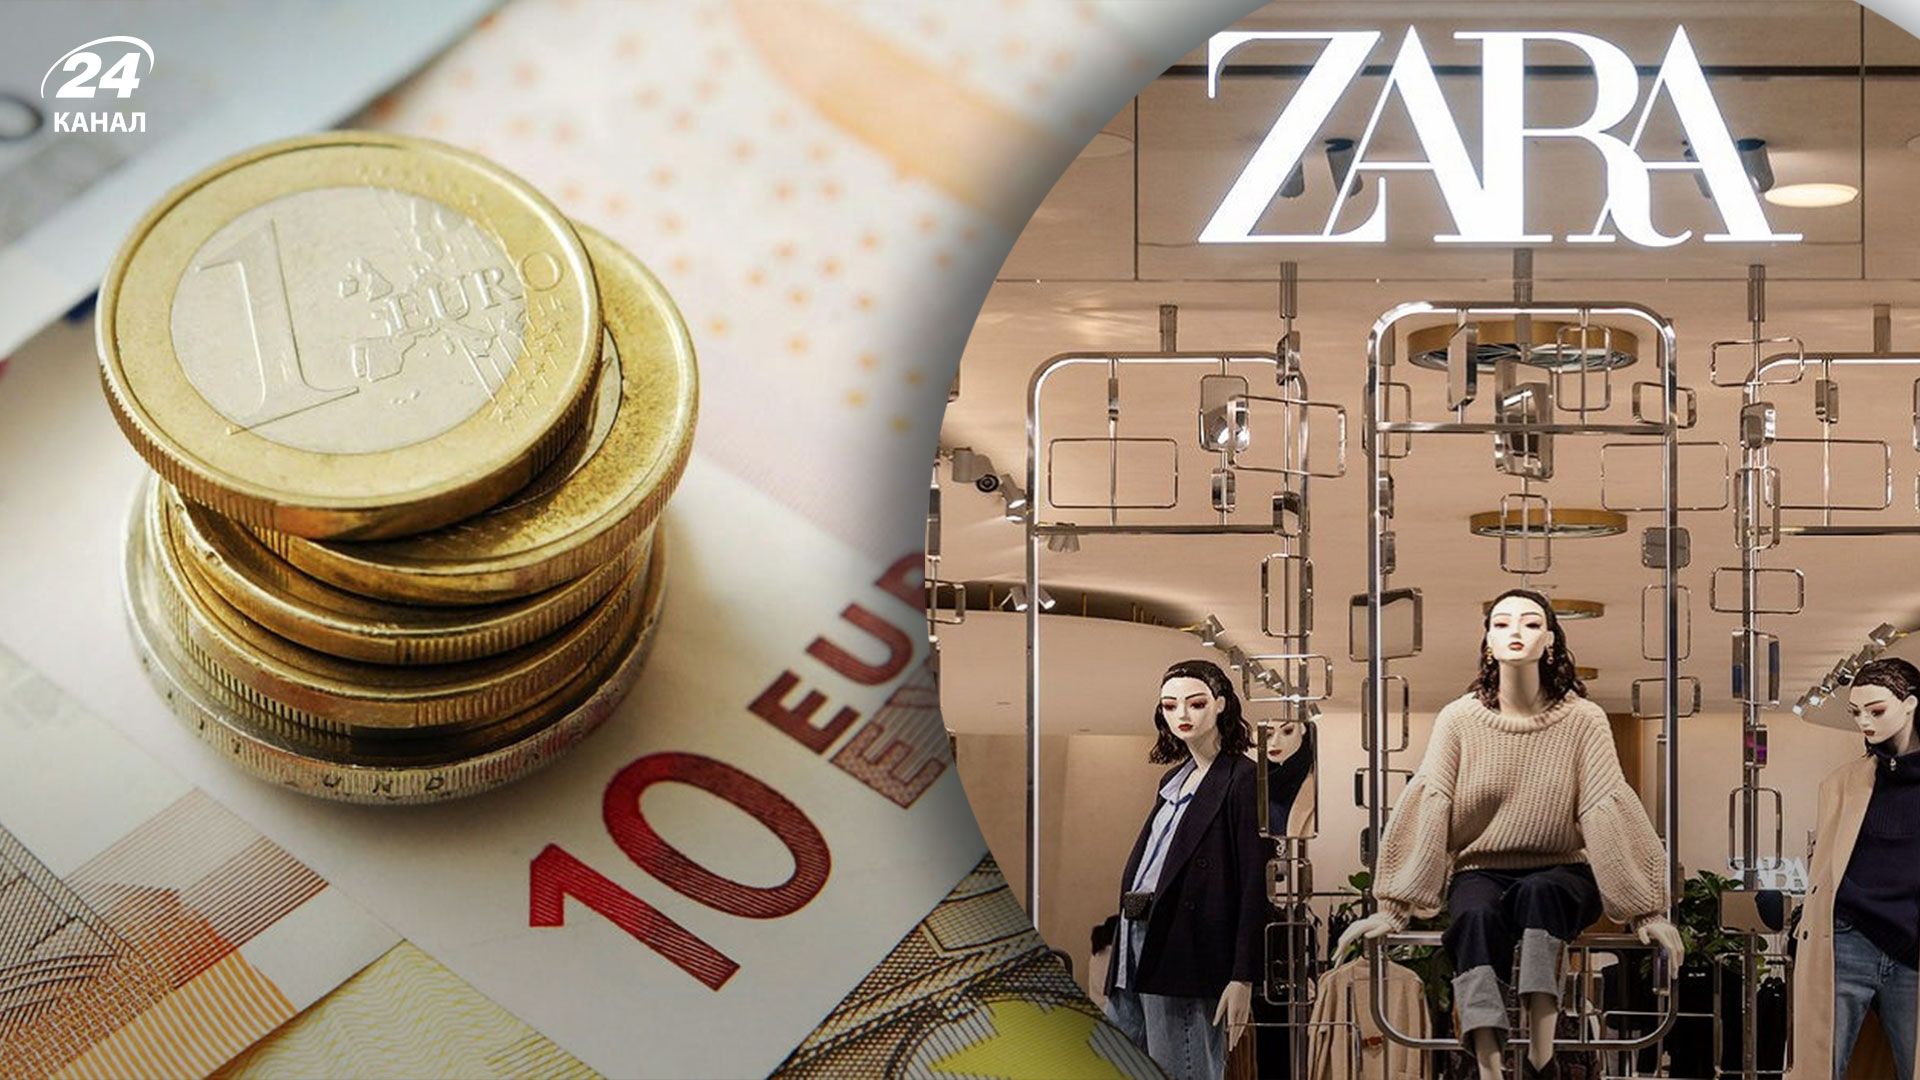 Работникам испанских магазинов Zara решили повысить зарплаты на 25% после того, как они объявили забастовки